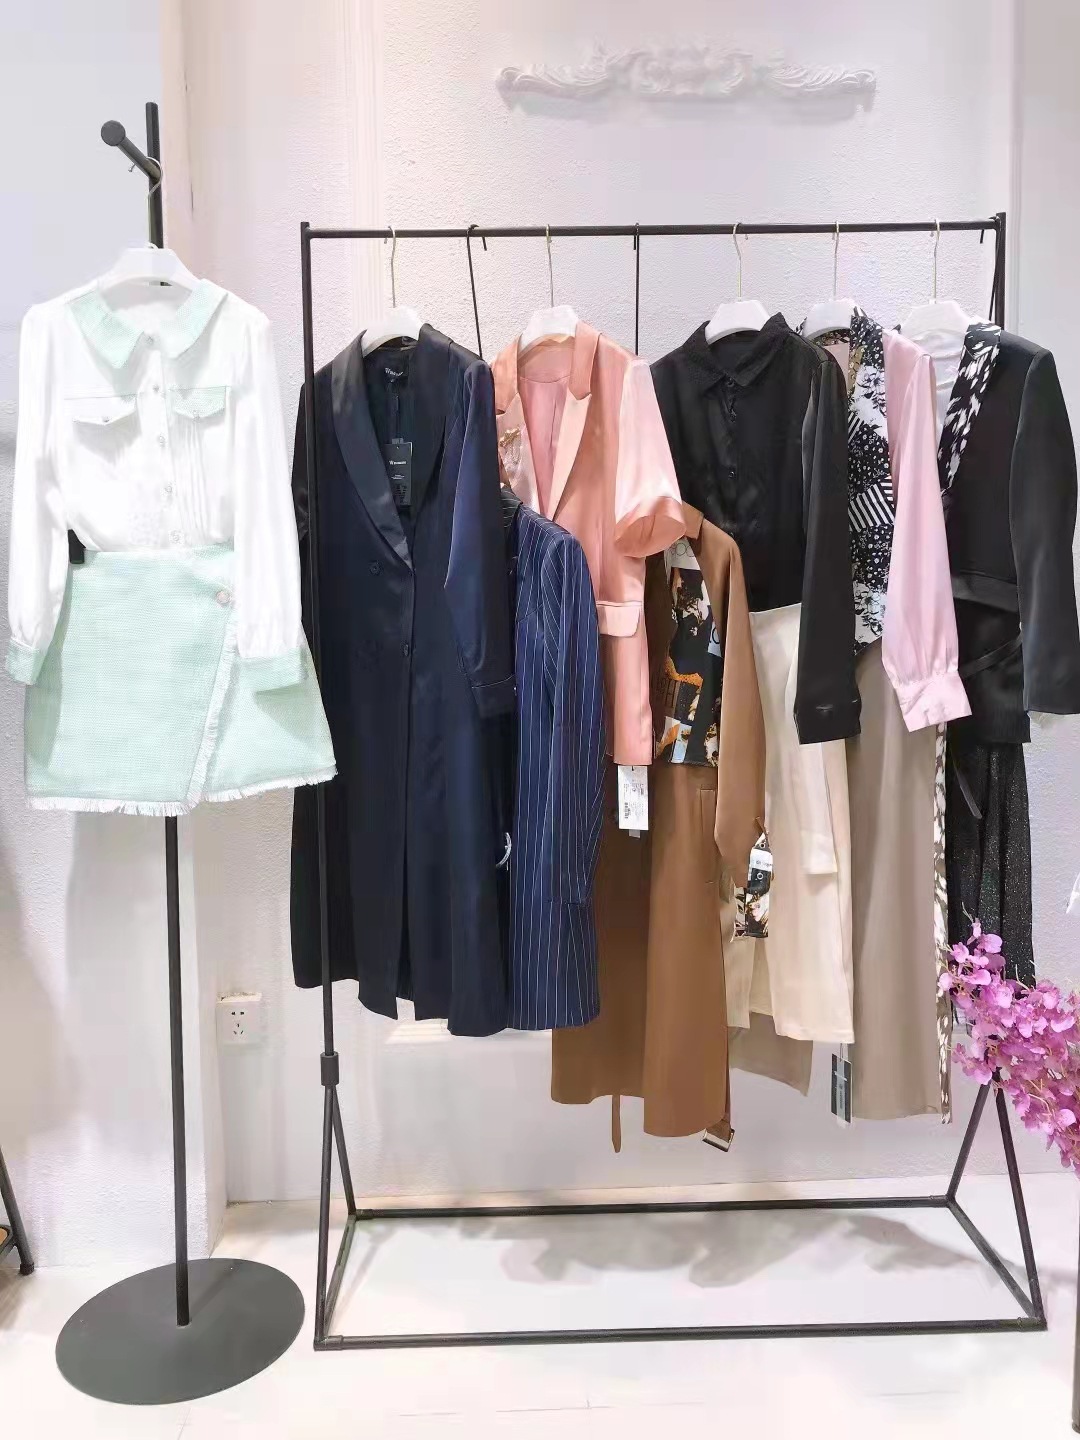 艾阿玛23尼春夏季新款连衣裙上衣知性女装品牌折扣直播实体店货源